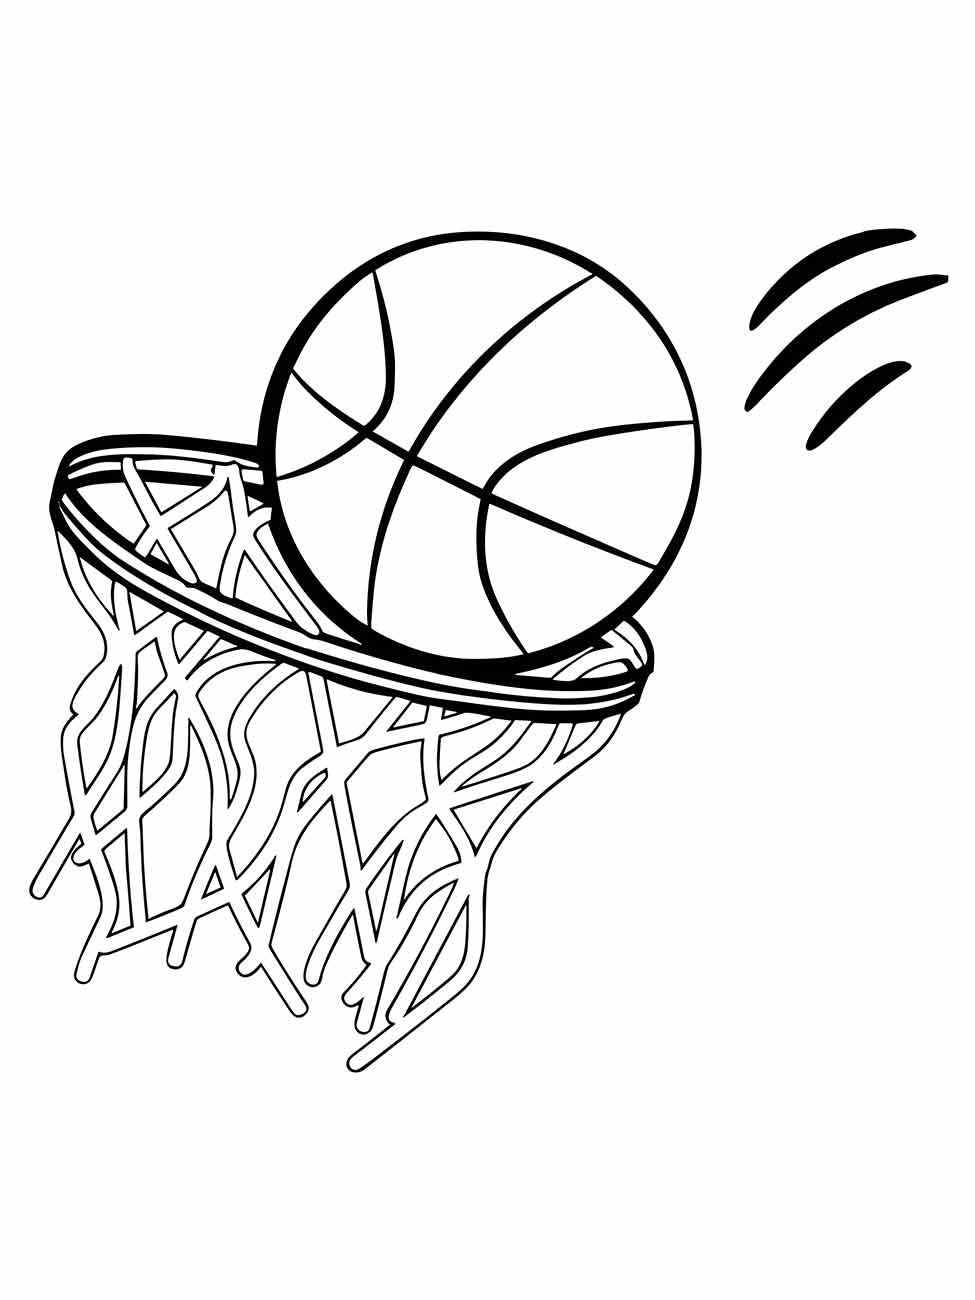 Bola de basquete e cesta para colorir - Imprimir Desenhos